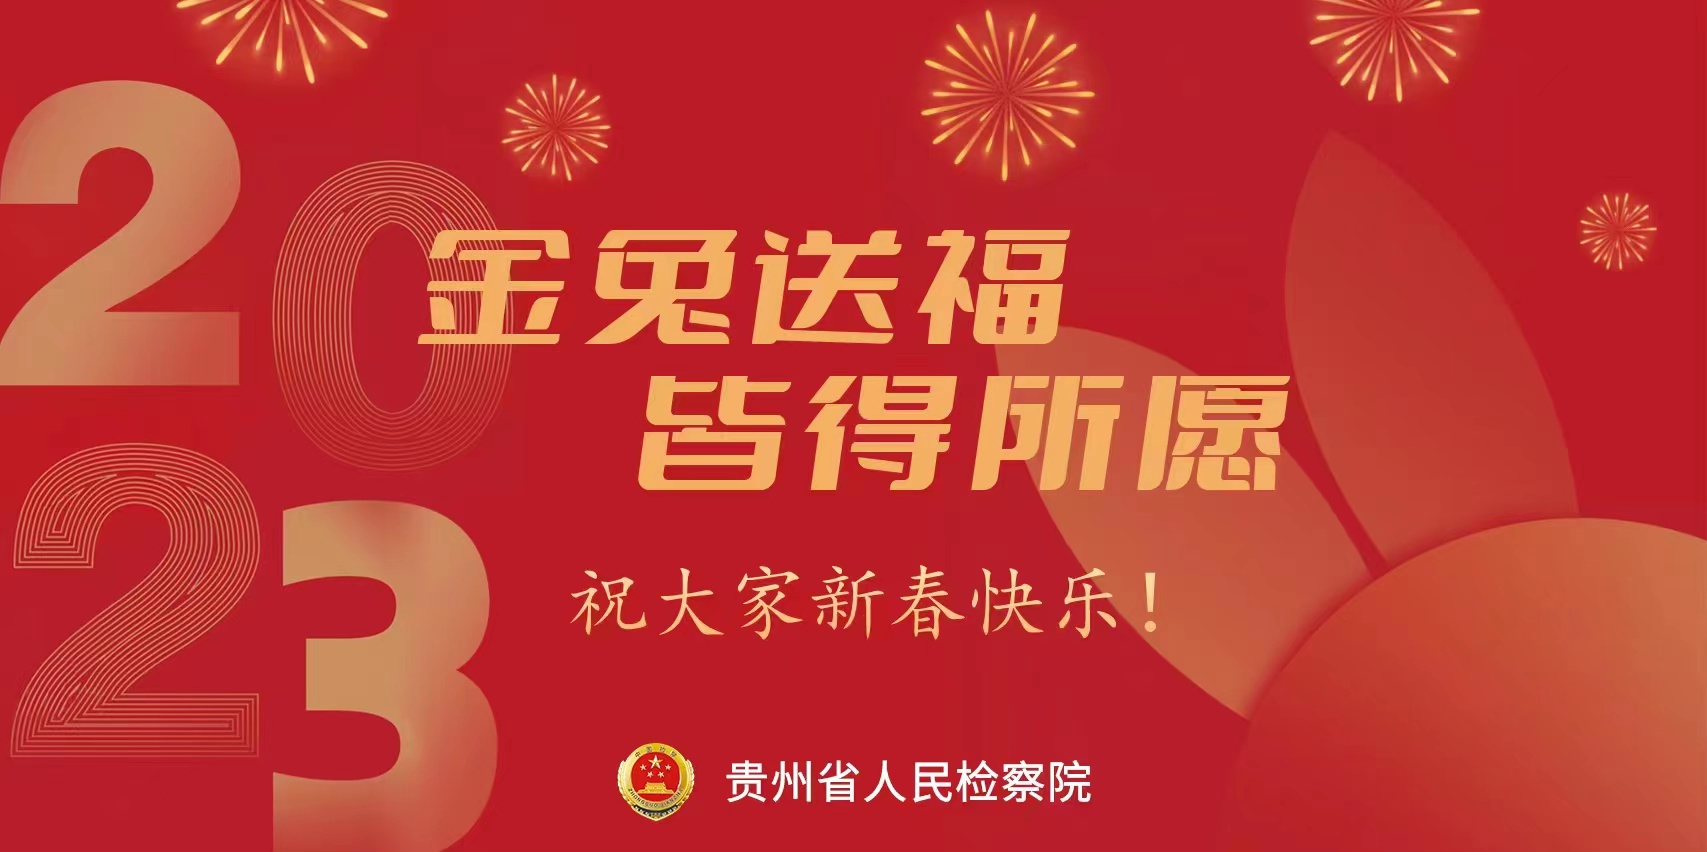 海报 | 贵州省人民检察院祝大家新春快乐